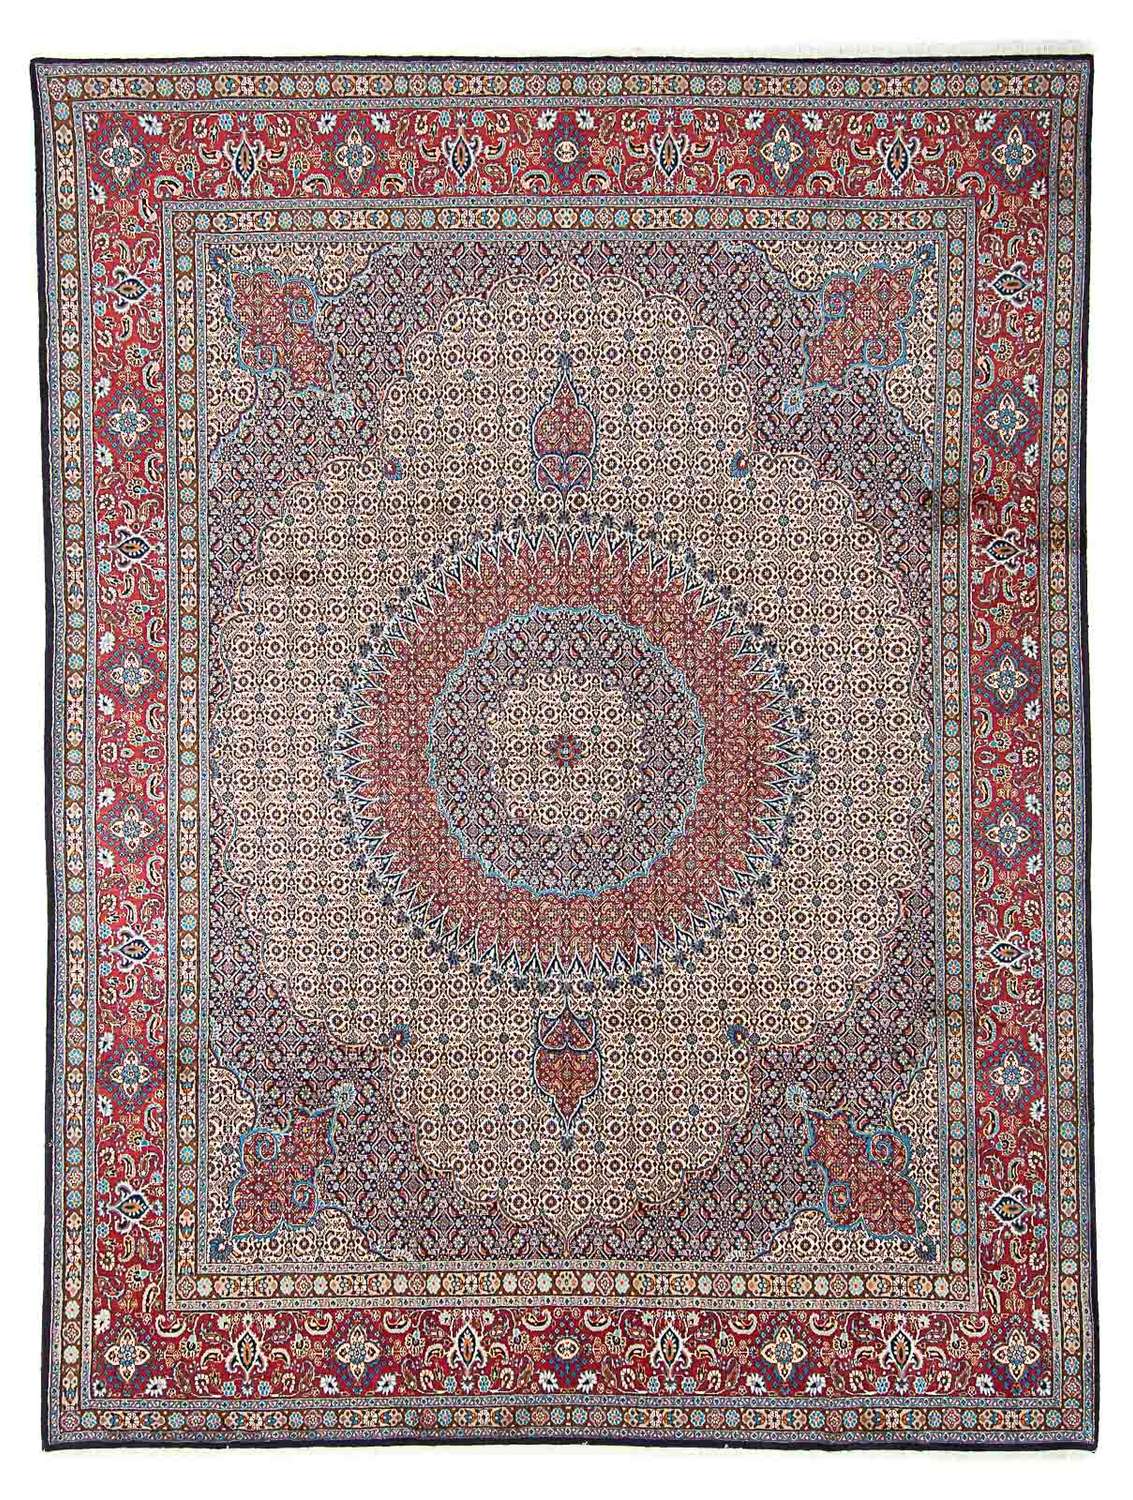 Alfombra persa - Clásica - 387 x 293 cm - multicolor